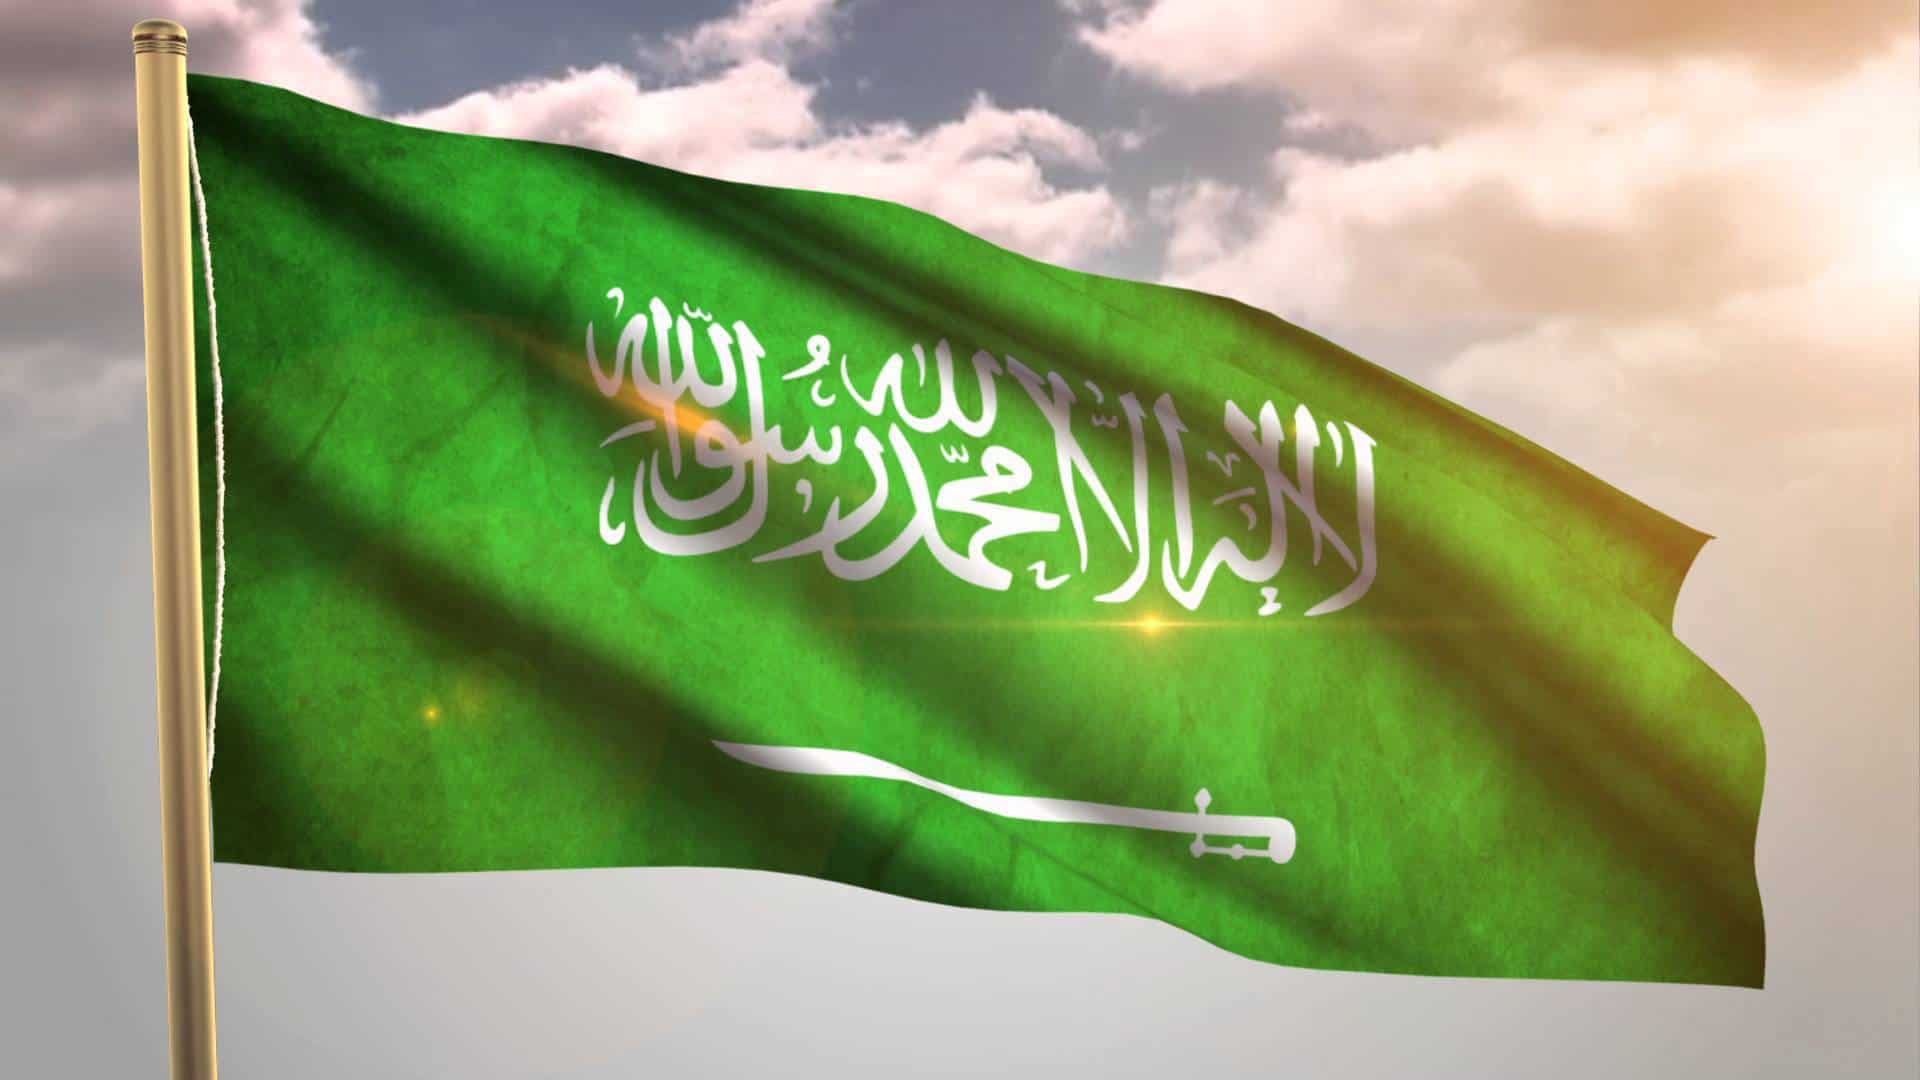   السعودية تدعو المجتمع الدولي لتمديد حظر السلاح على إيران